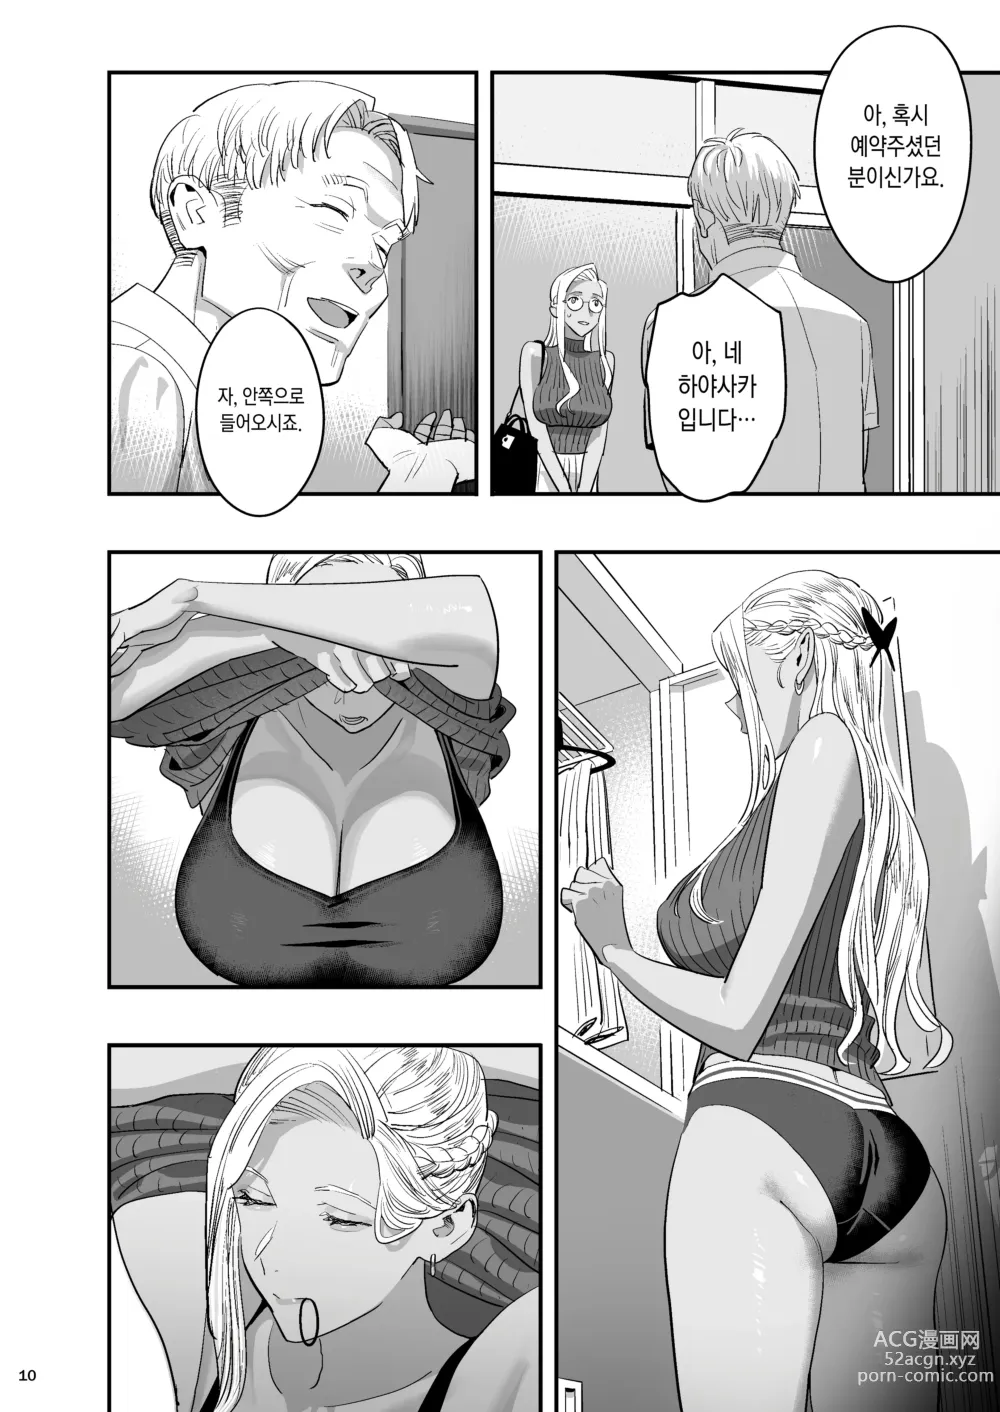 Page 7 of doujinshi 내가 먼저 좋아했는데 정체.